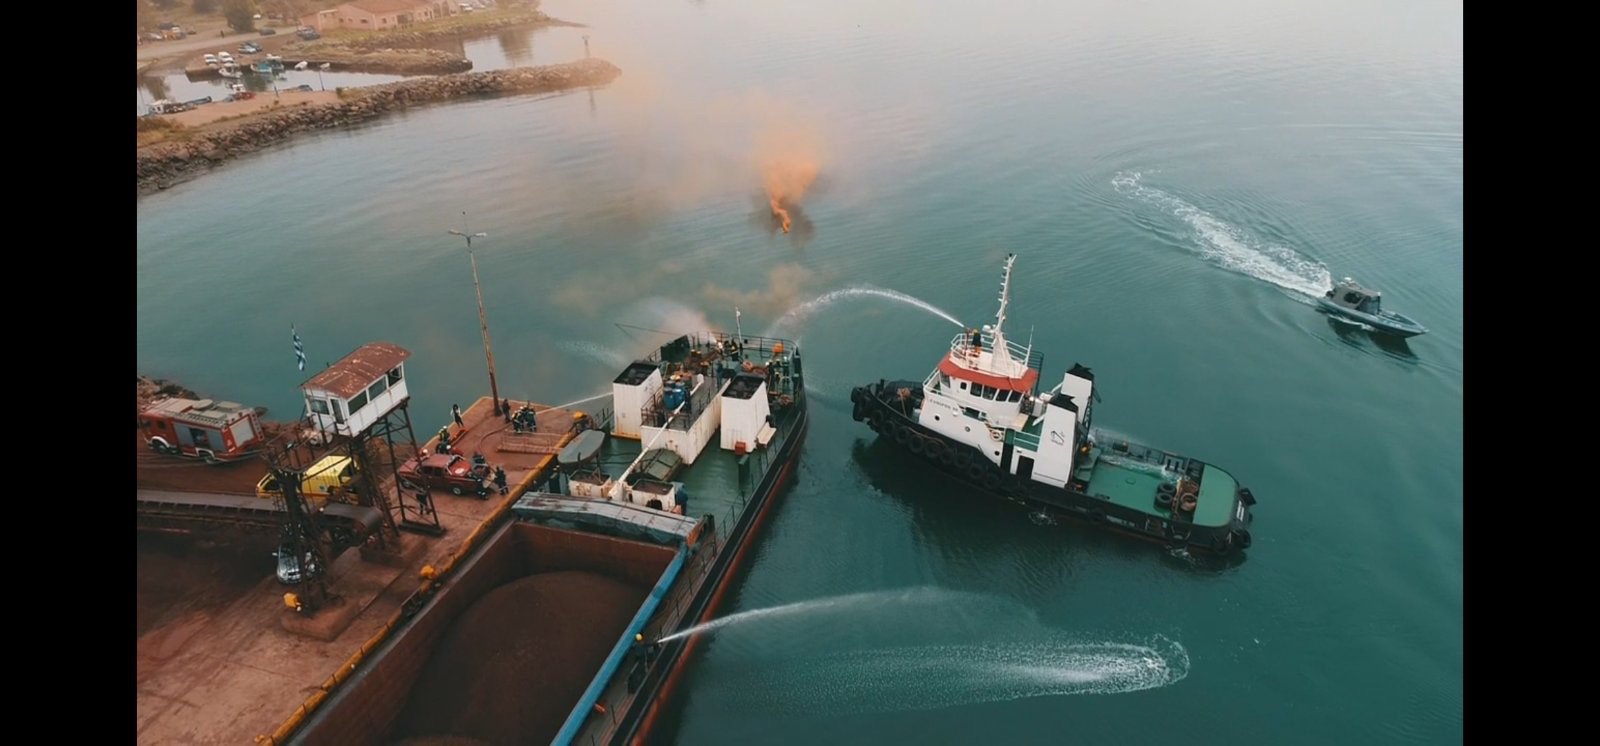 Άσκηση Αντιμετώπισης πυρκαγιάς σε πλοίο Έρευνας διάσωσης – Καταπολέμησης θαλάσσιας ρύπανσης από τη Λιμενική Αρχή Χαλκίδας